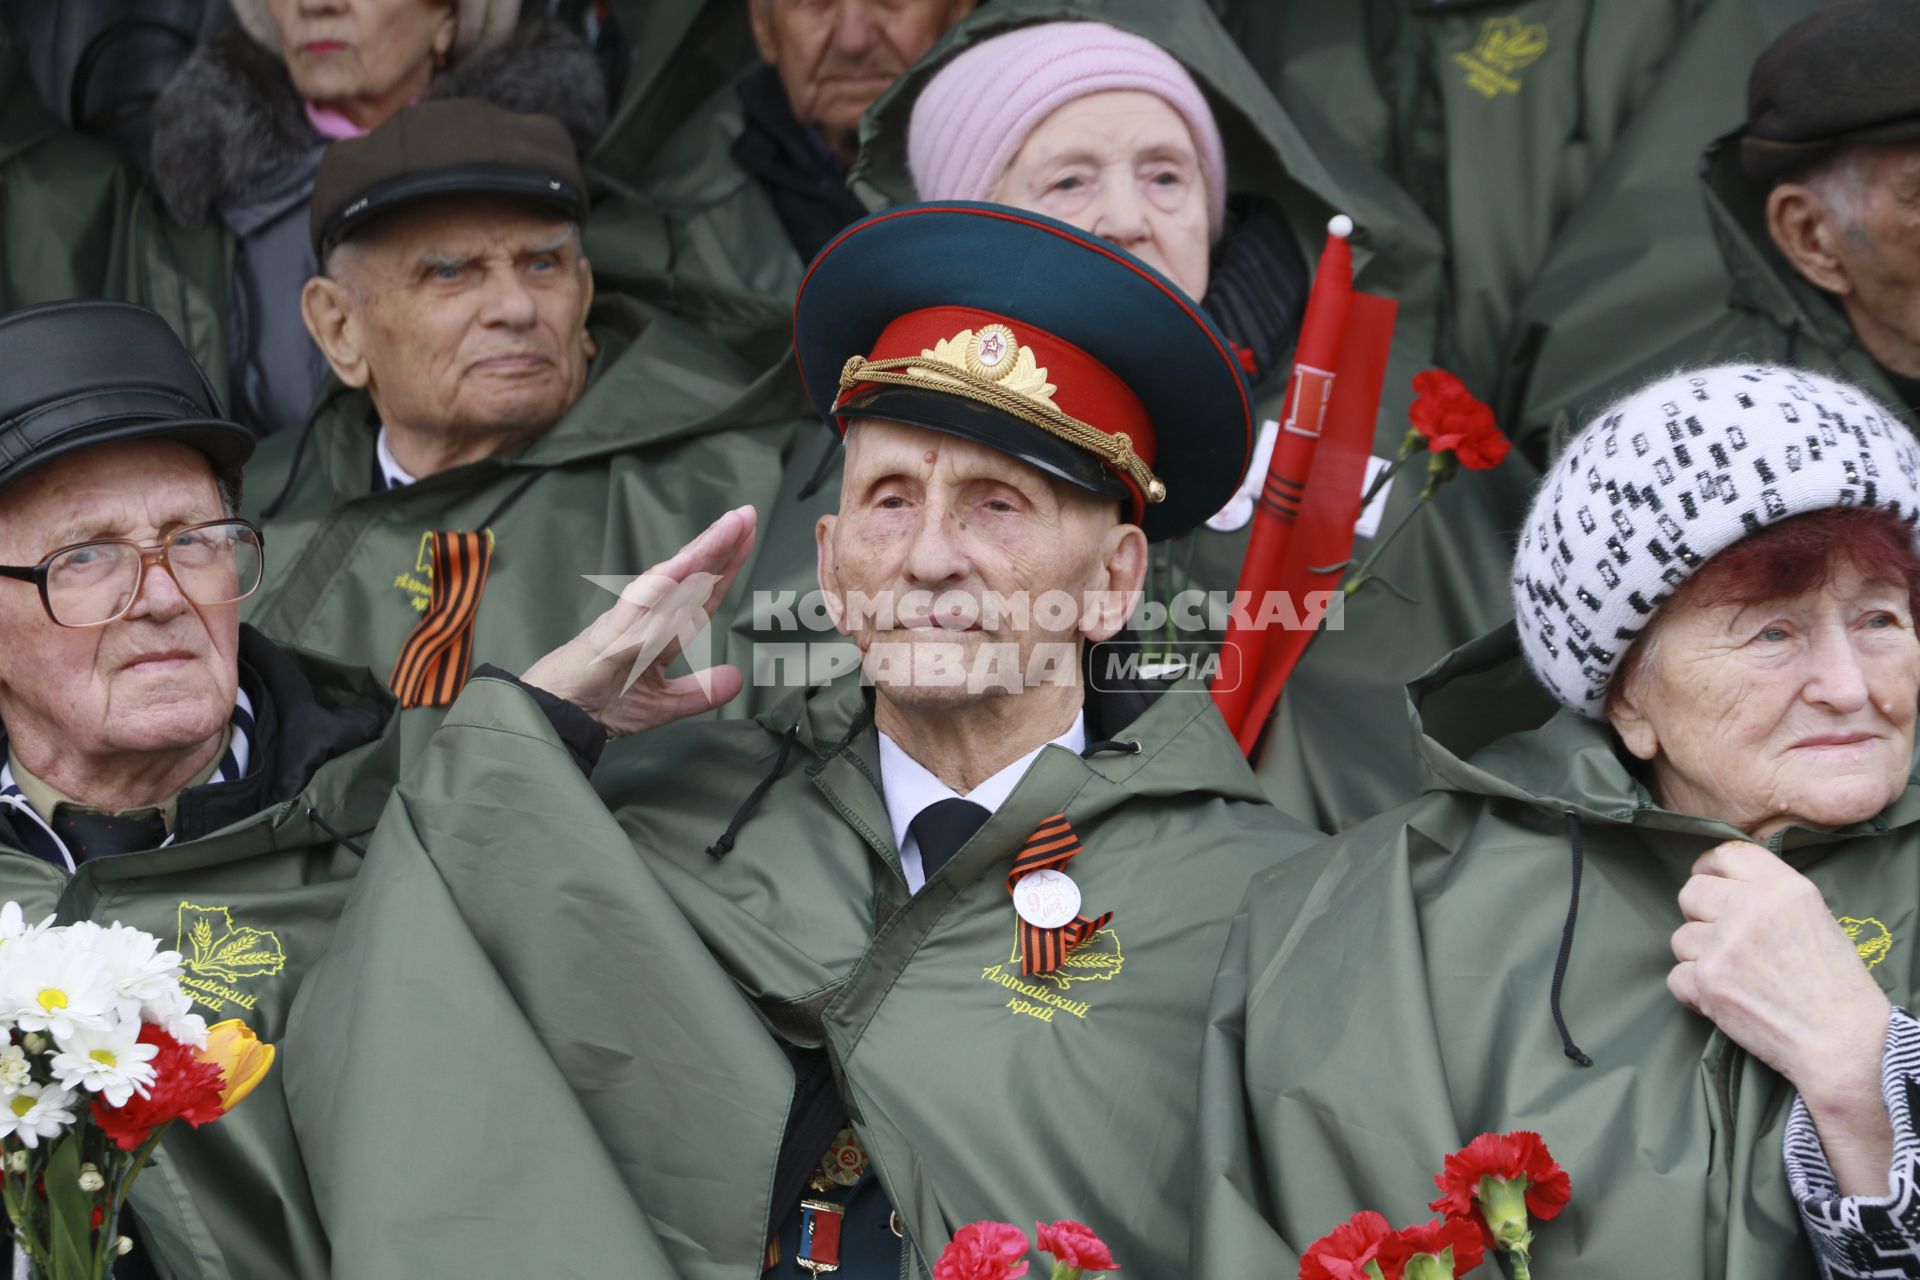 Барнаул. Ветераны во время празднования 73-й годовщины Победы в Великой Отечественной войне.